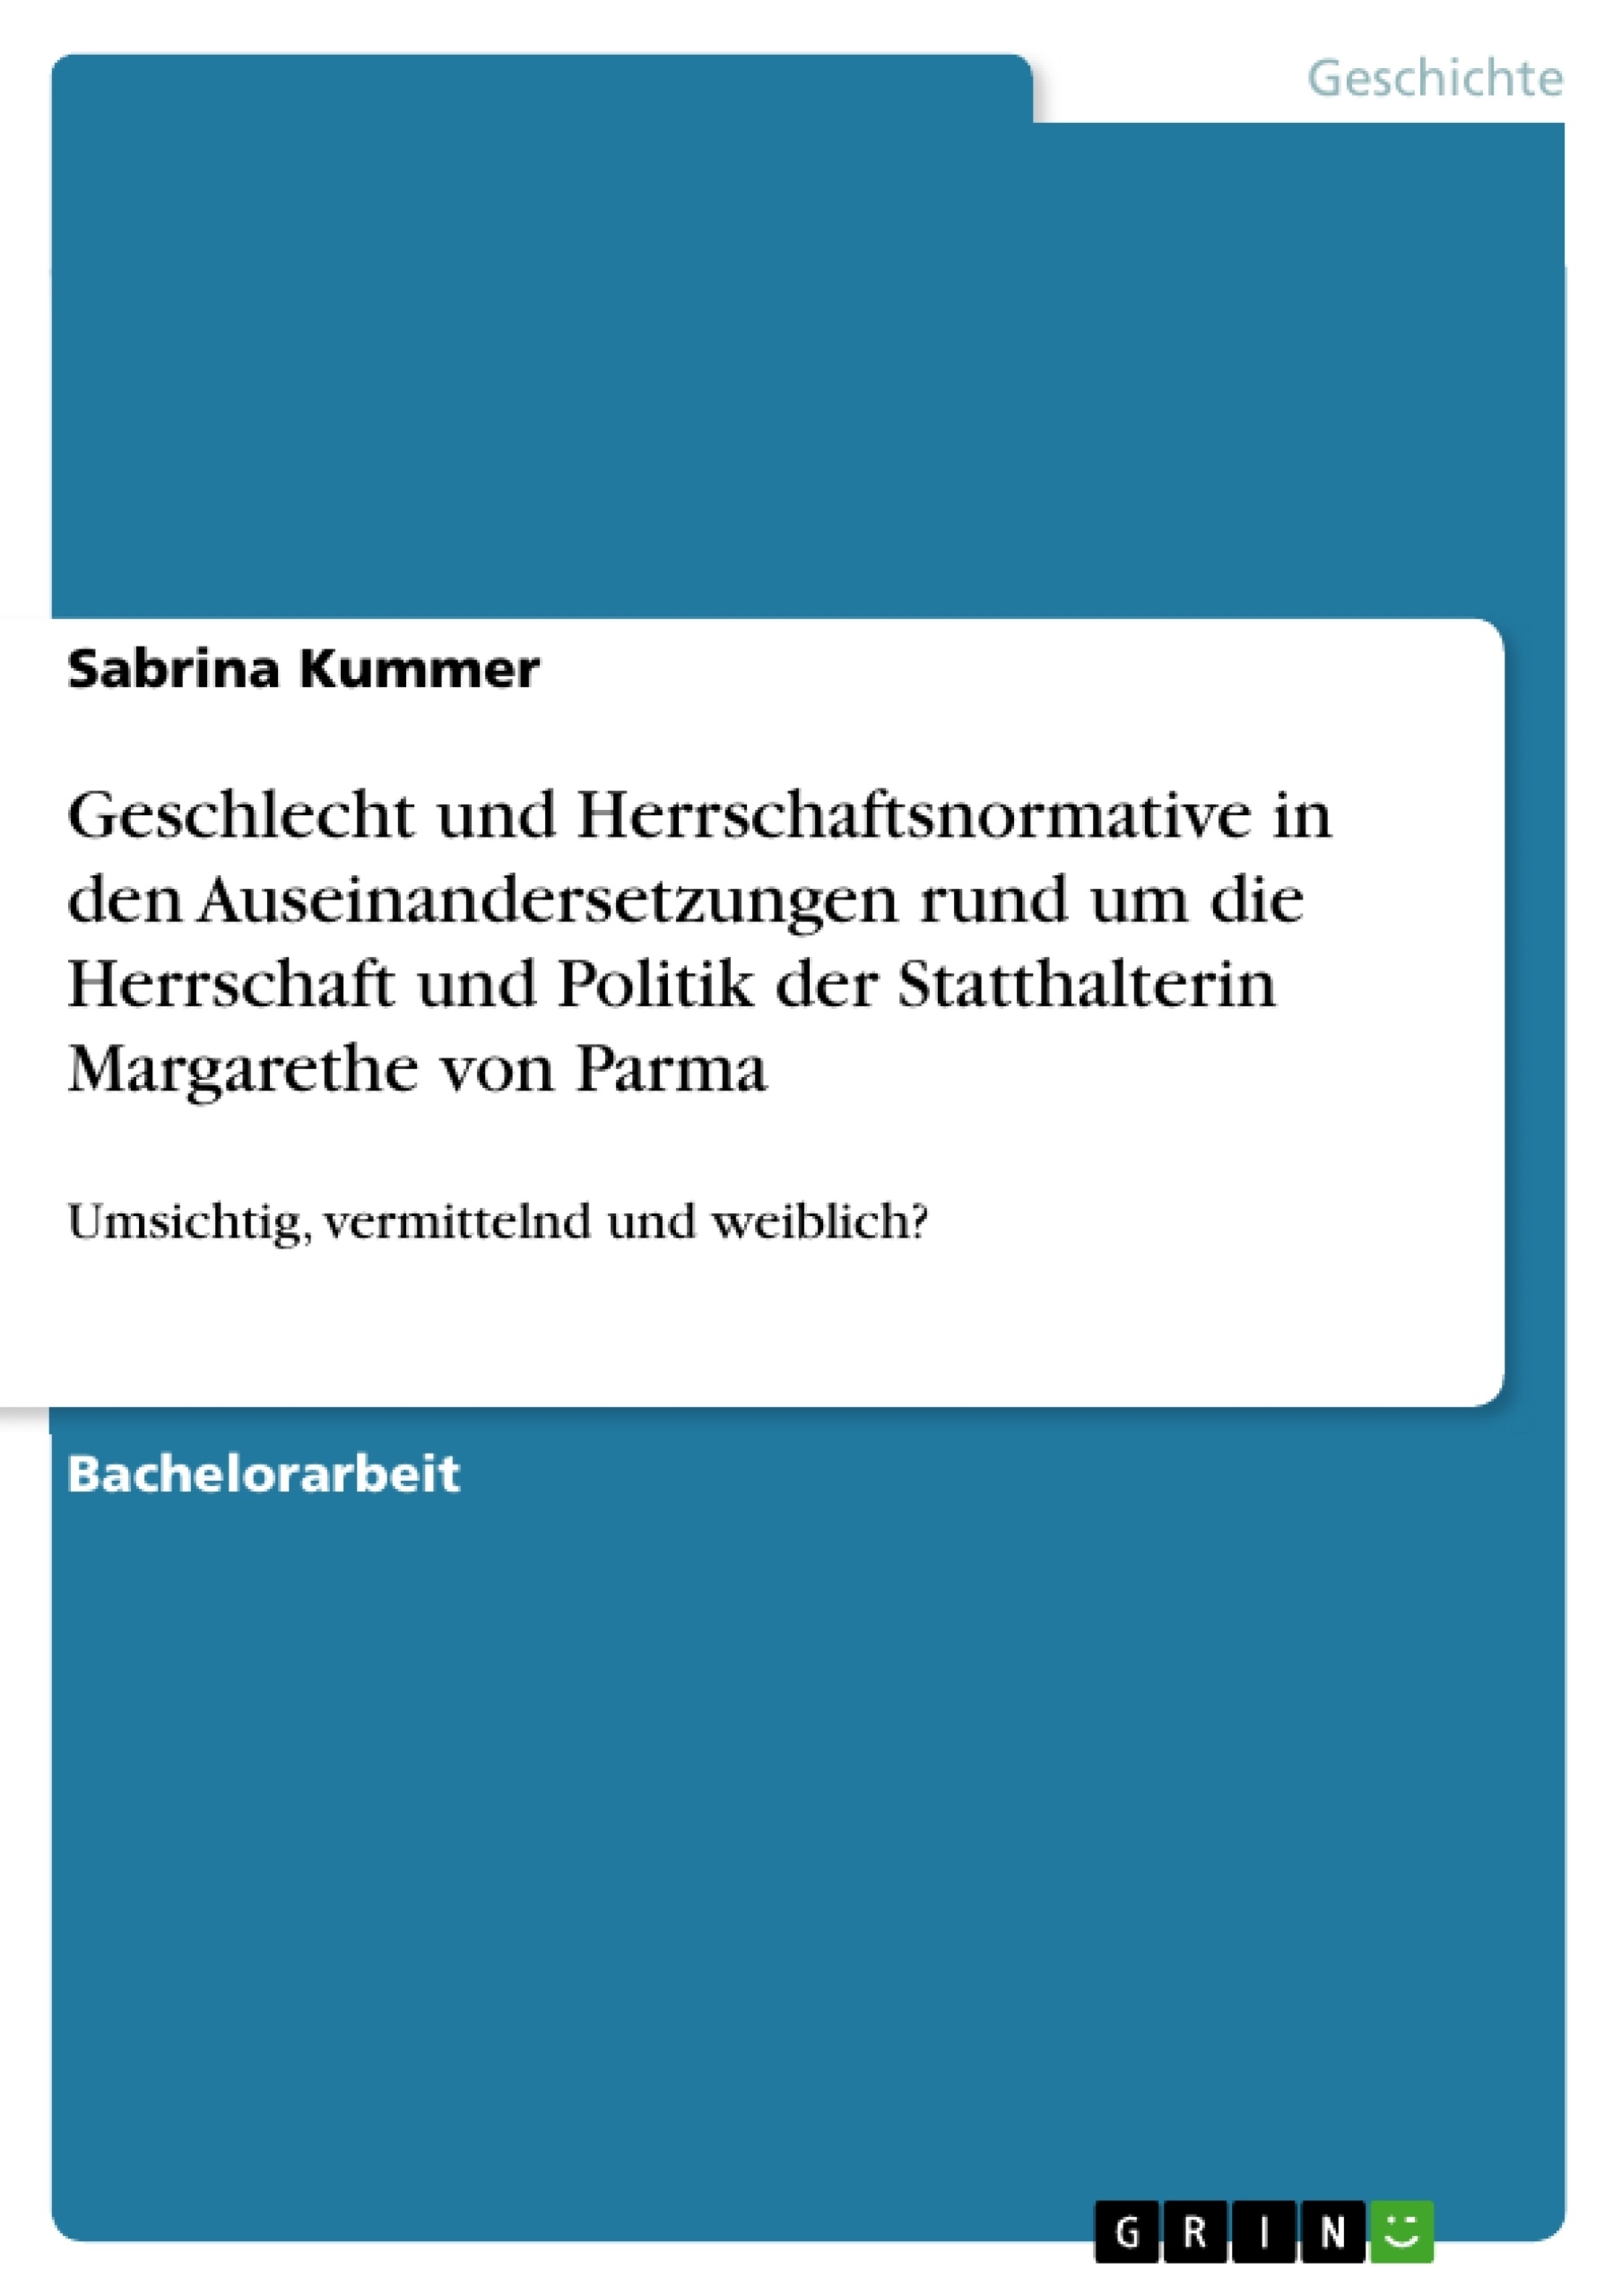 Title: Geschlecht und Herrschaftsnormative in den Auseinandersetzungen rund um die Herrschaft und Politik der Statthalterin Margarethe von Parma